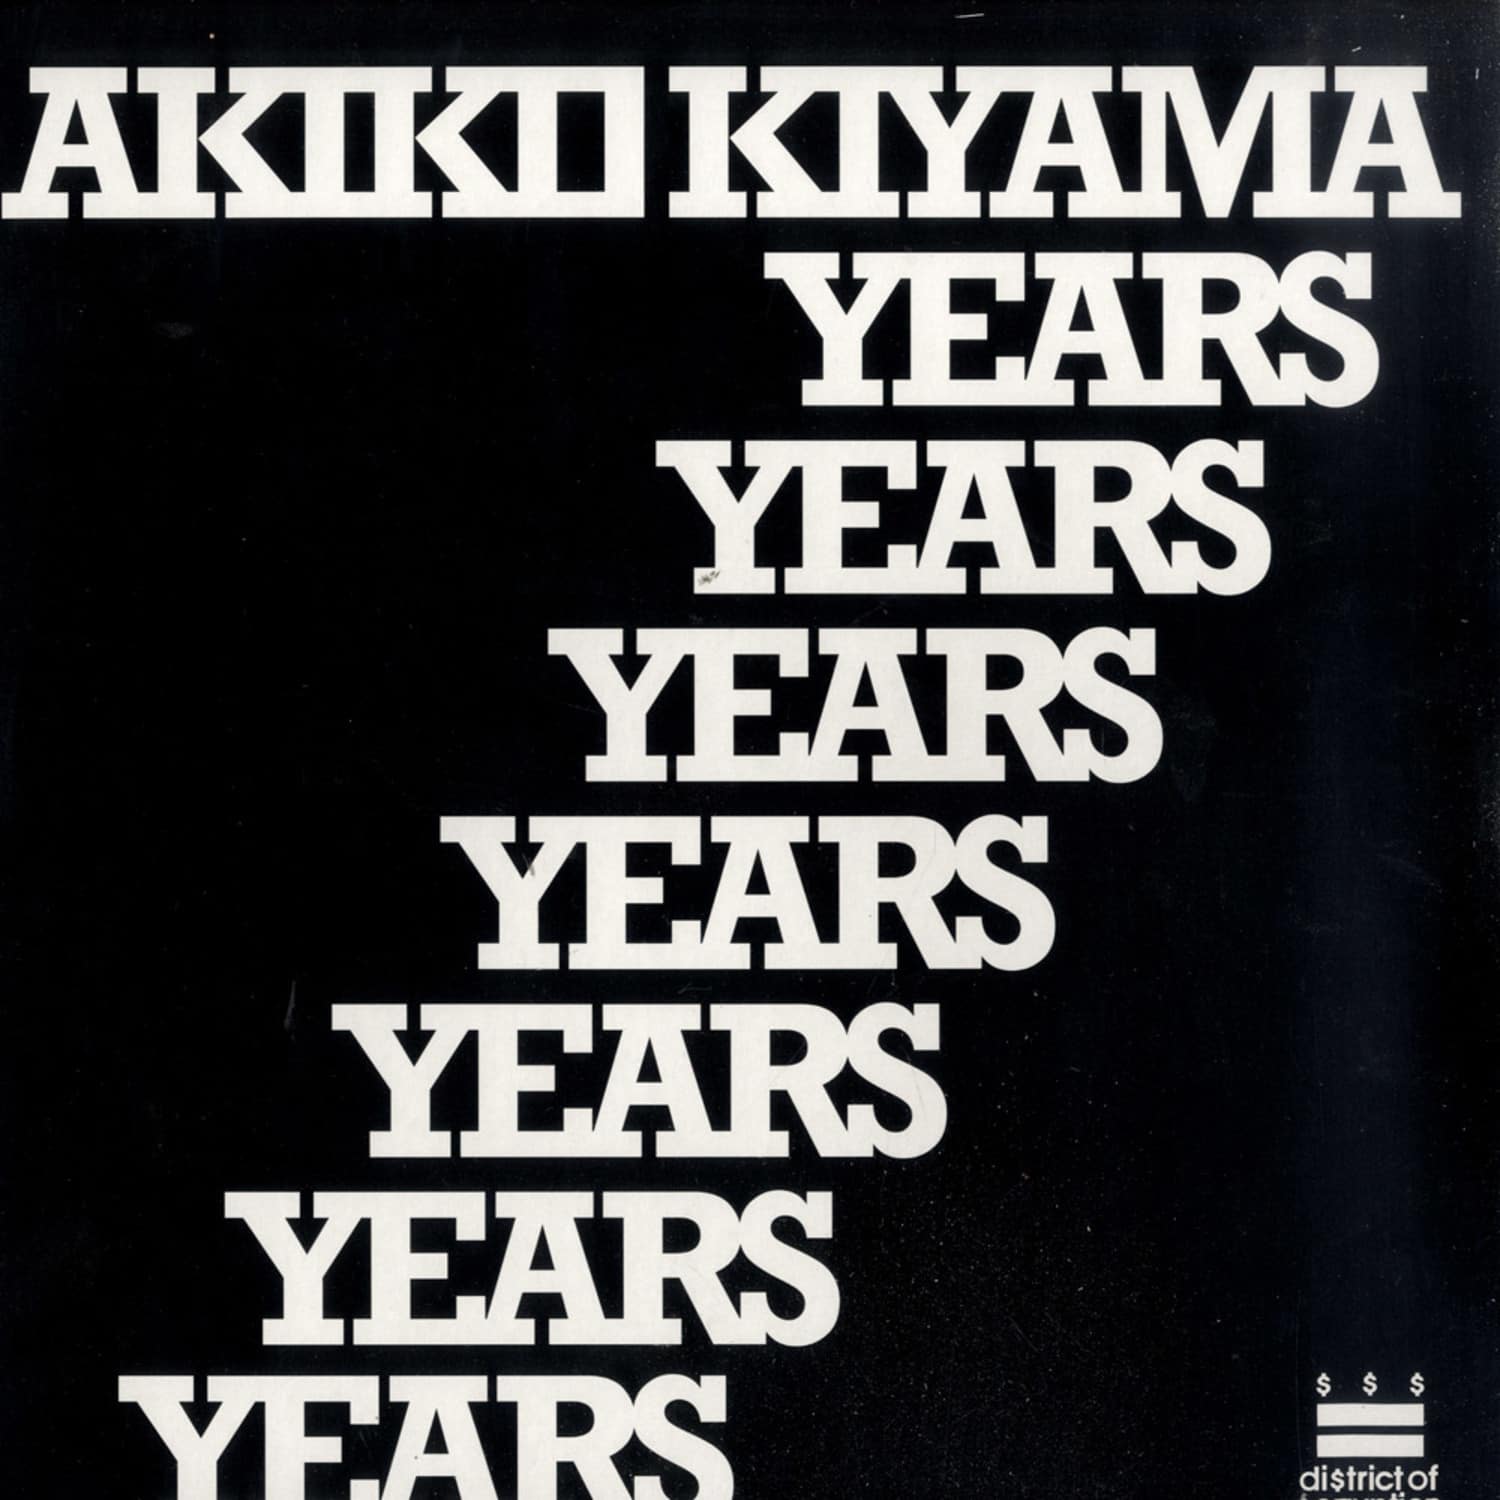 Akiko Kijama - 7 YEARS PART 1